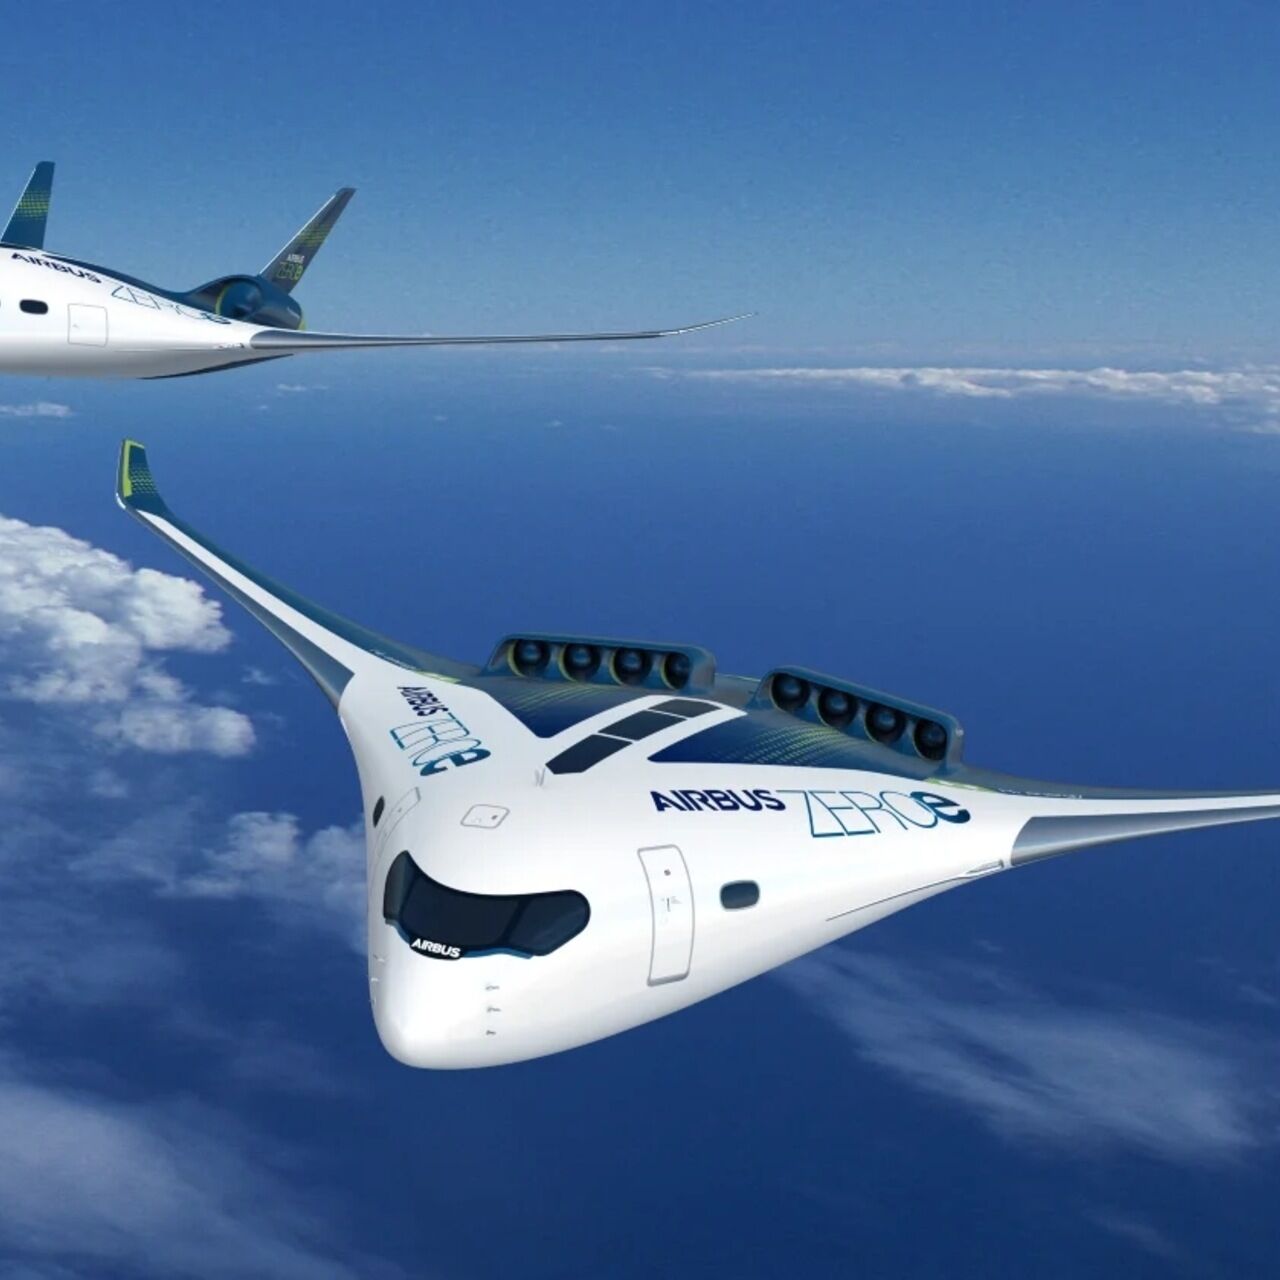 ხმაური: კომპანია Airbus-ის ZEROe პროექტი არის ერთ-ერთი შერეული ფრთების თვითმფრინავი, რომელიც შემოთავაზებულია ბოლო წლებში და შესწავლის საგანია.